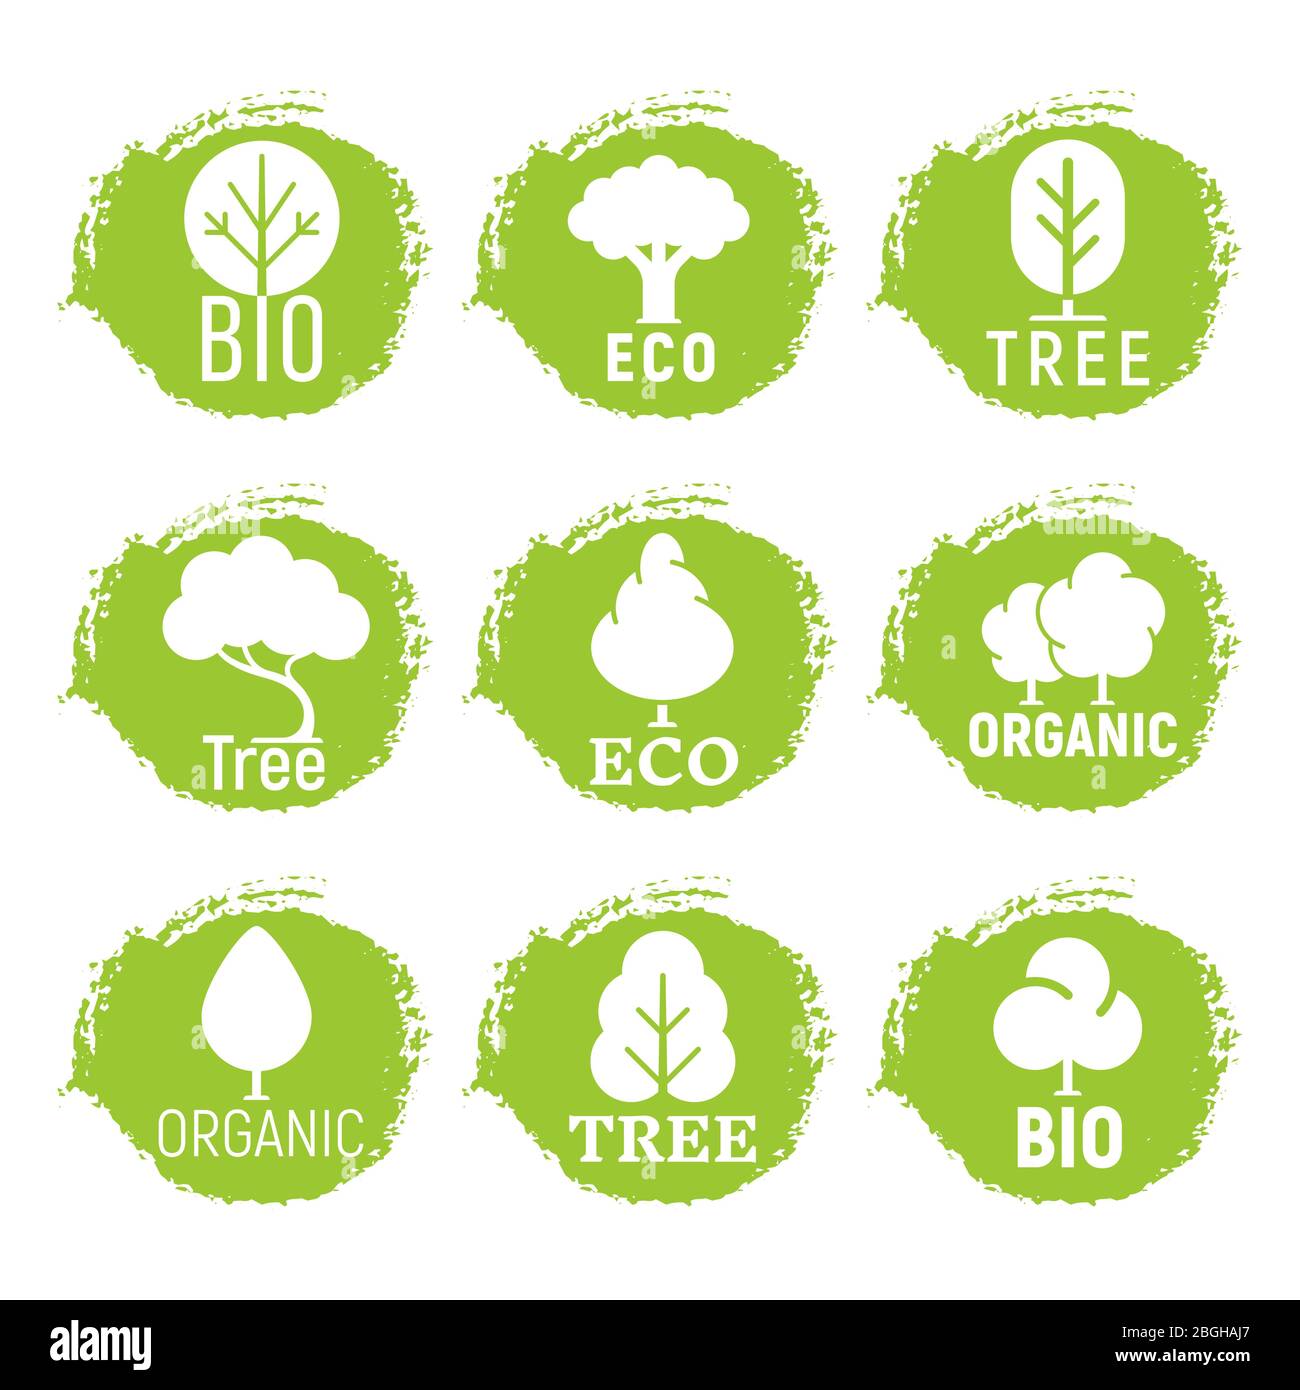 Umweltfreundlich, Bio, Baum Logos auf grünem Grund Hintergrund. Vektor Natur Ökologie Symbol der Set-Illustration Stock Vektor